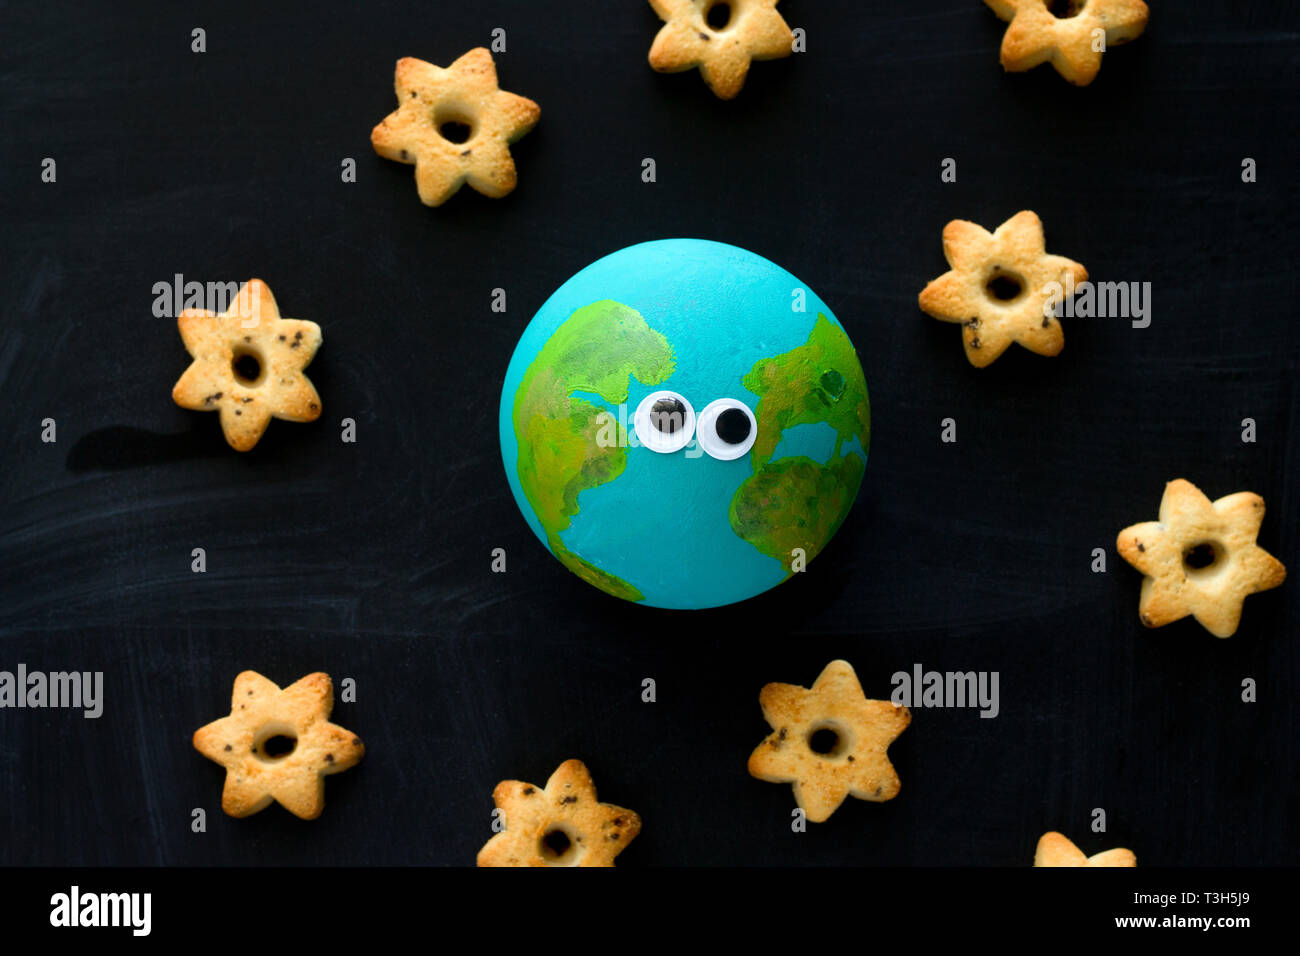 Vista superior del modelo artesanal del planeta Tierra con gracioso googly ojos y galletas en forma de estrellas en la pizarra , el espacio y la astronomía concepto Foto de stock